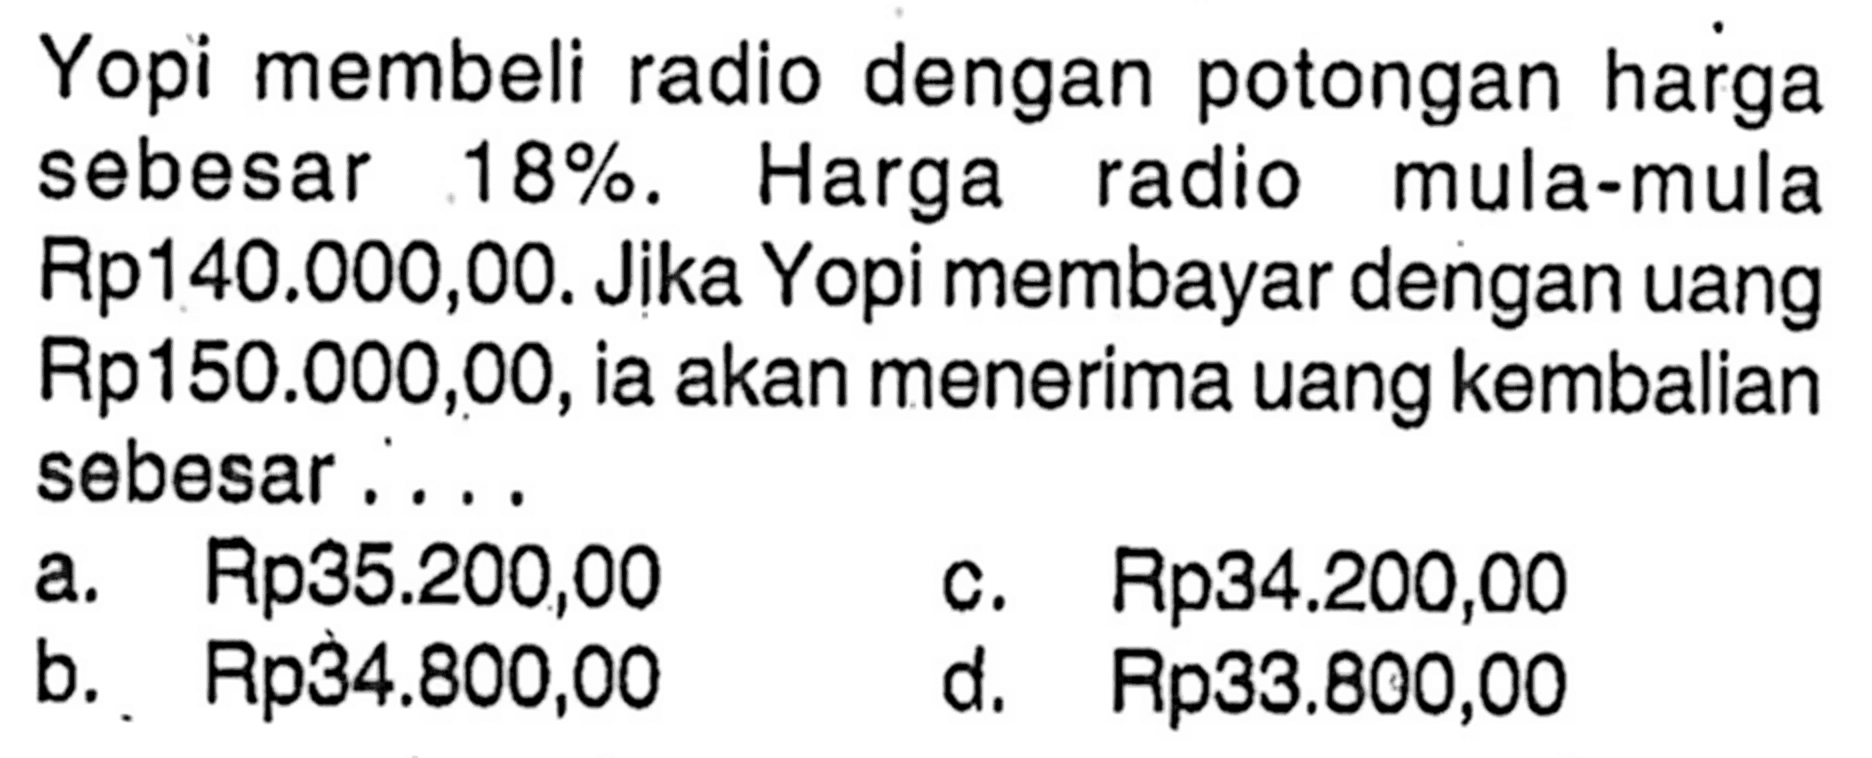 Yopi membeli radio dengan potongan harga sebesar  18%. Harga radio mula-mula Rp140.000,00. Jika Yopi membayar dengan uang Rp150.000,00, ia akan menerima uang kembalian sebesar....
